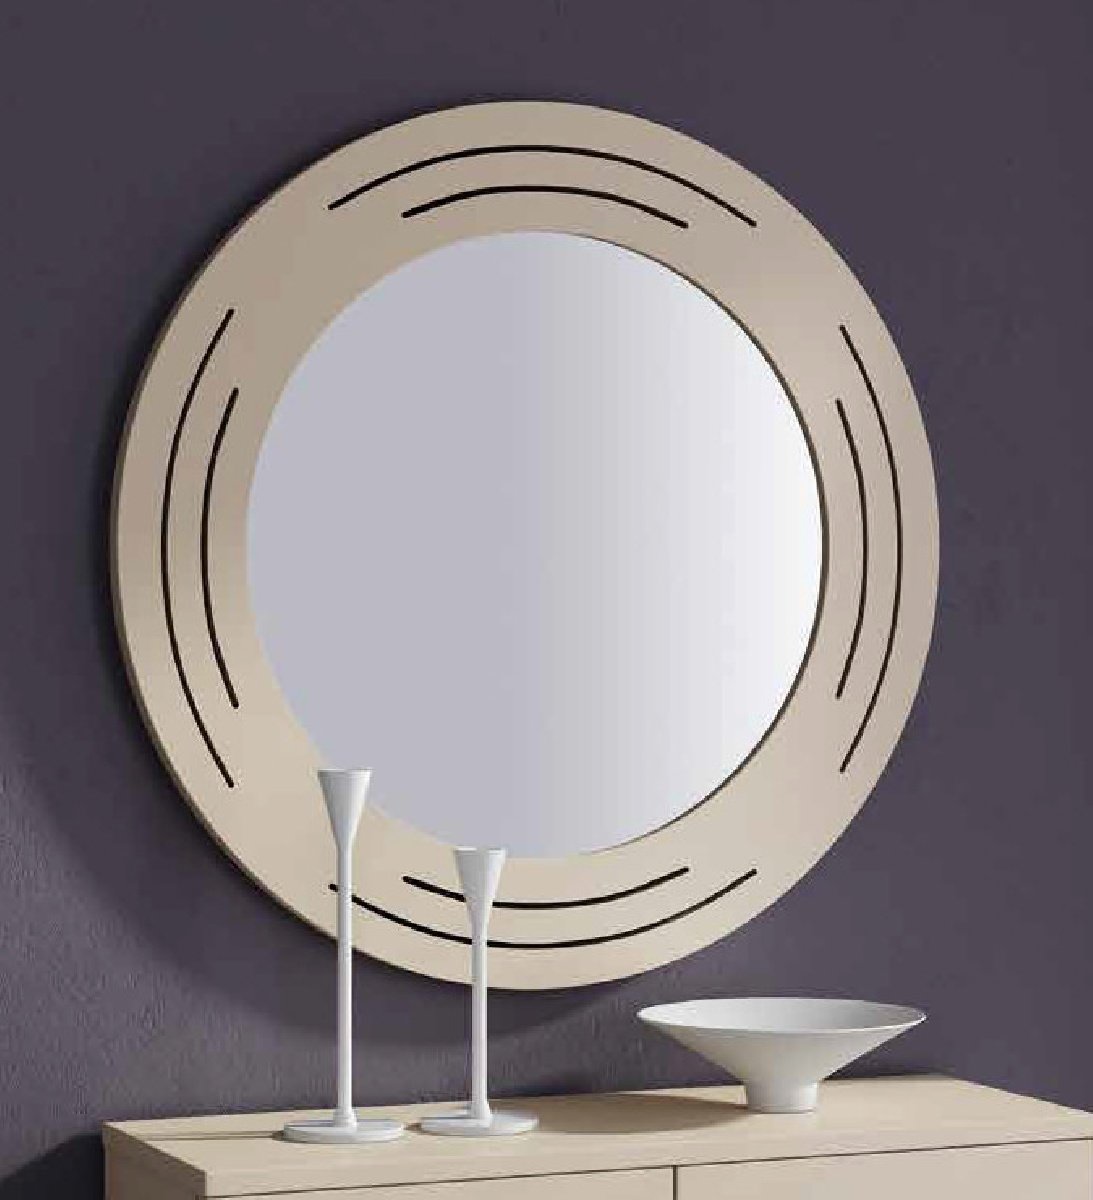 Зеркало Disemobel Cloe, круглое, 75x75 см (670)670